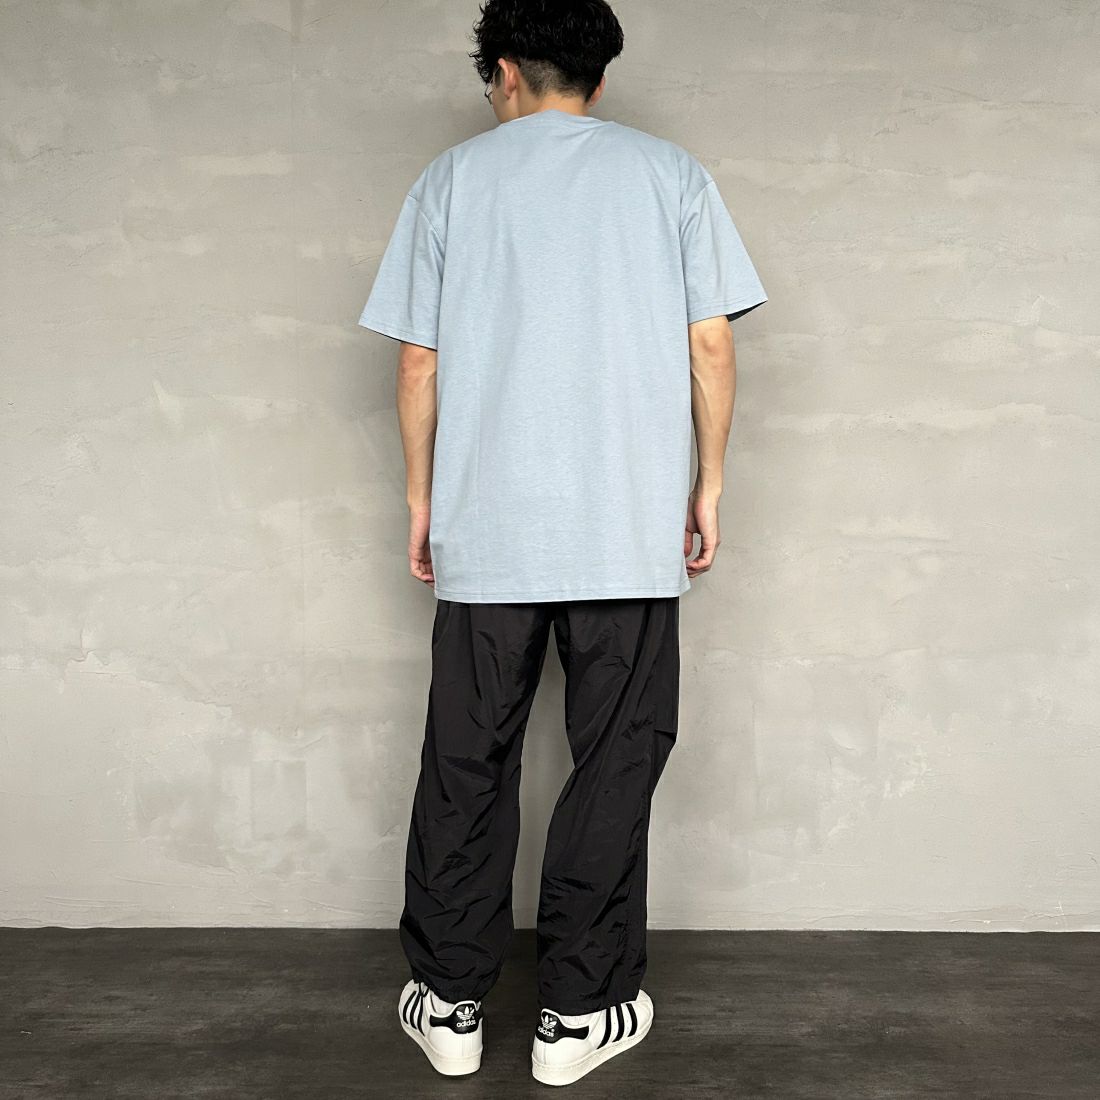 carhartt WIP [カーハートダブリューアイピー] ショートスリーブアメリカンスクリプトTシャツ [I029956] FROSTED BL &&モデル身長：168cm 着用サイズ：M&&